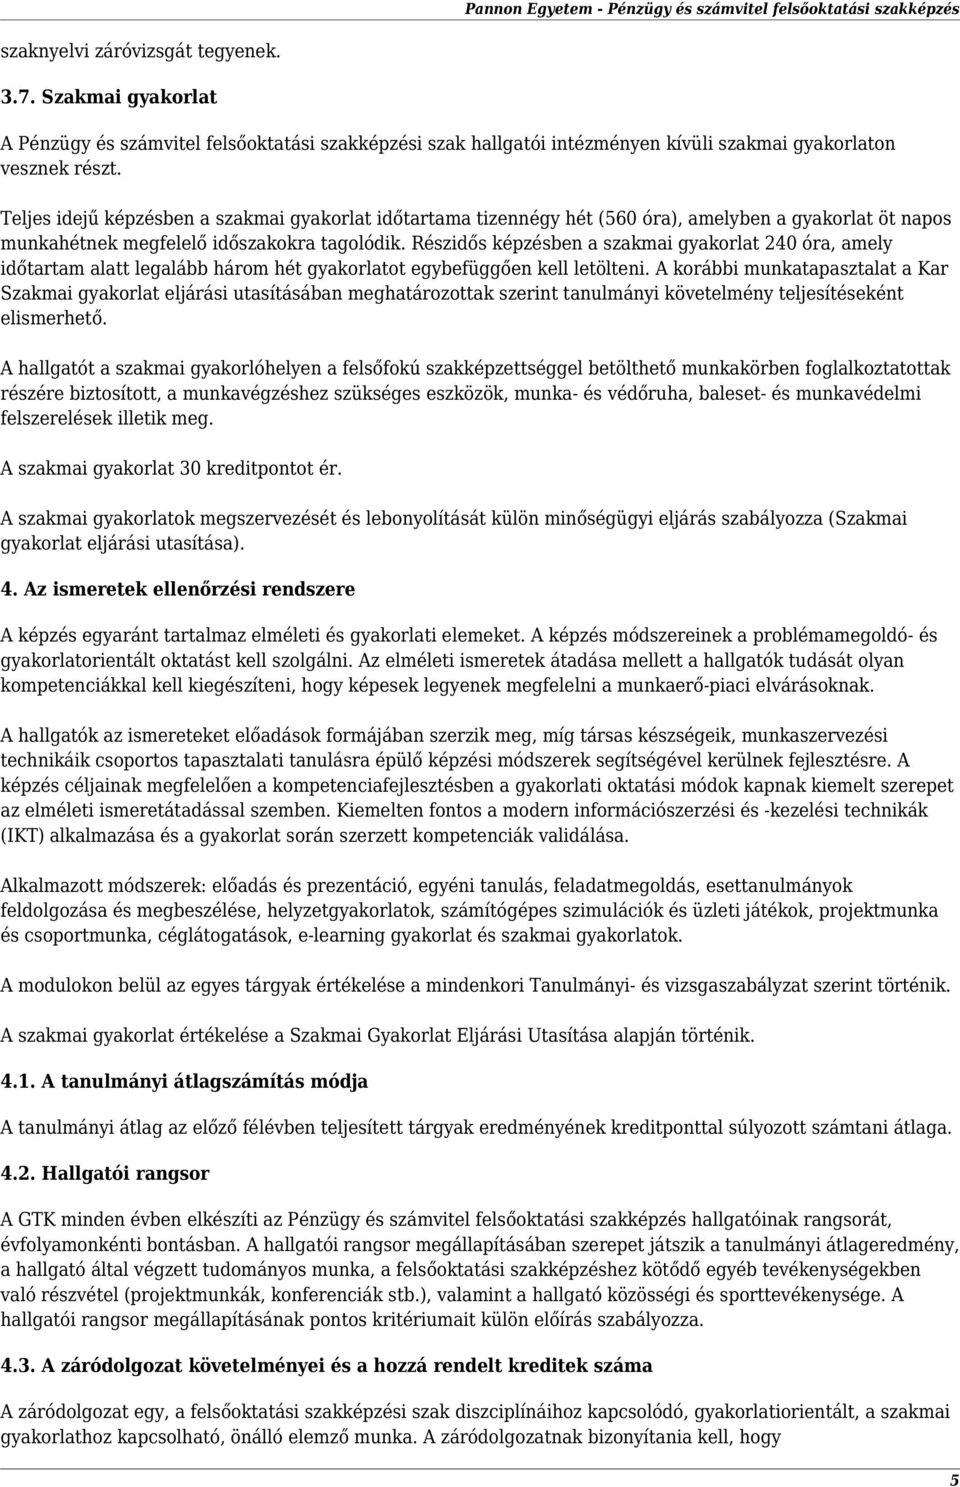 Gazdaságtudományi Kar. Pénzügy és számvitel felsőoktatási szakképzés - PDF  Ingyenes letöltés